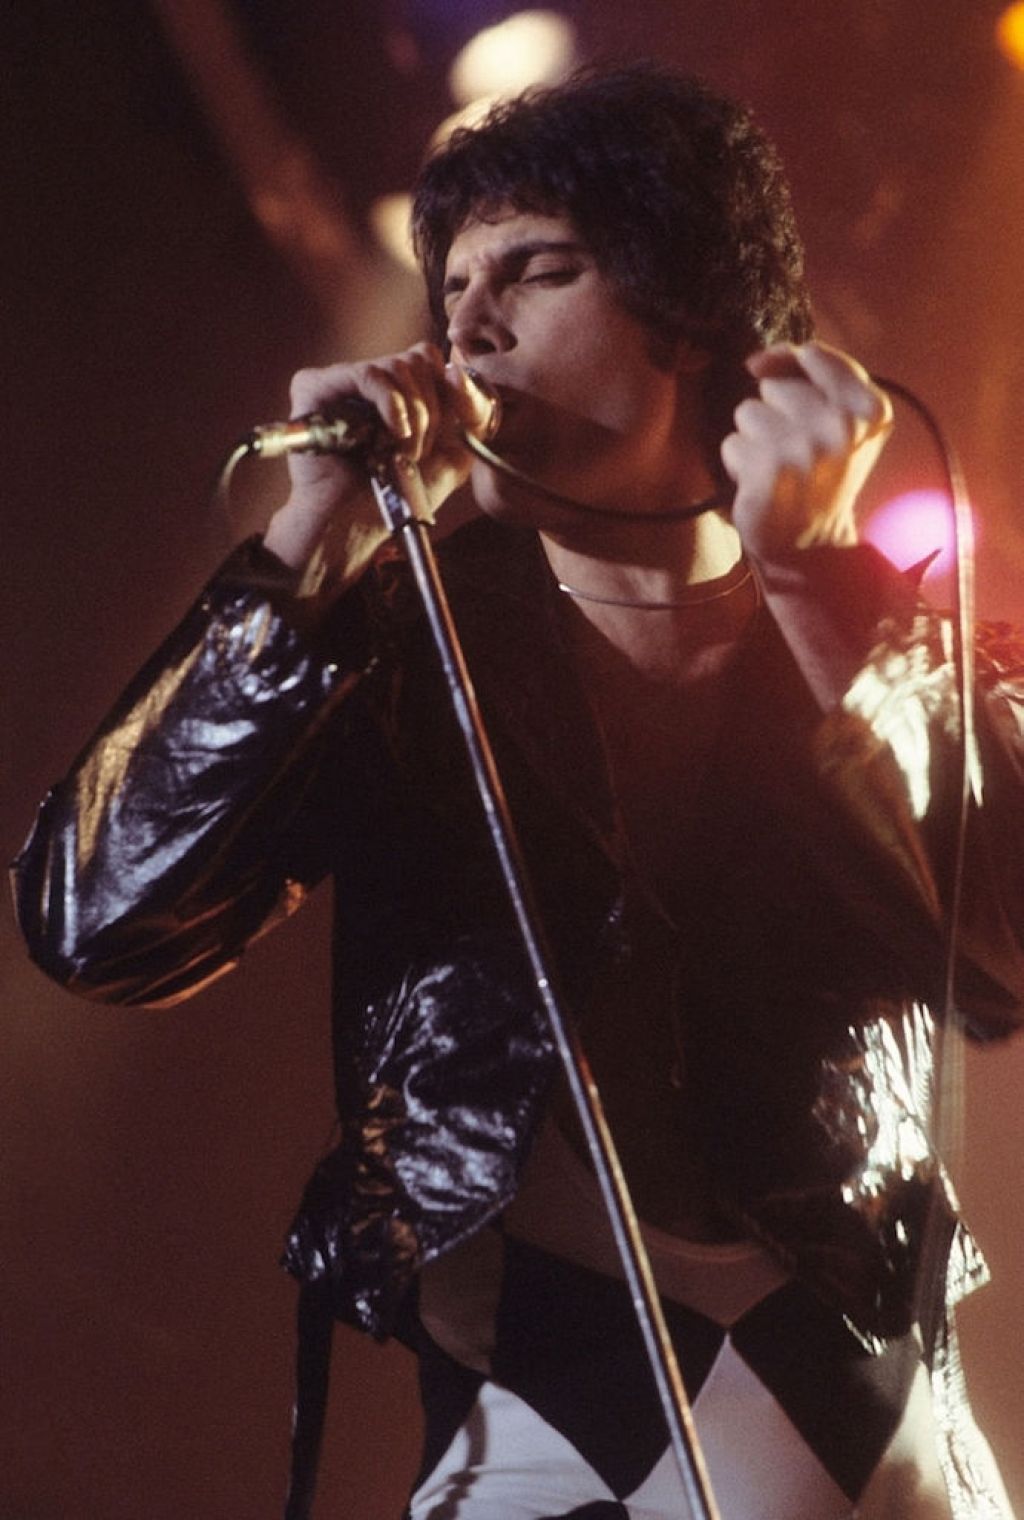 Freddie Mercury kuumim kuulsus on sündimise aasta